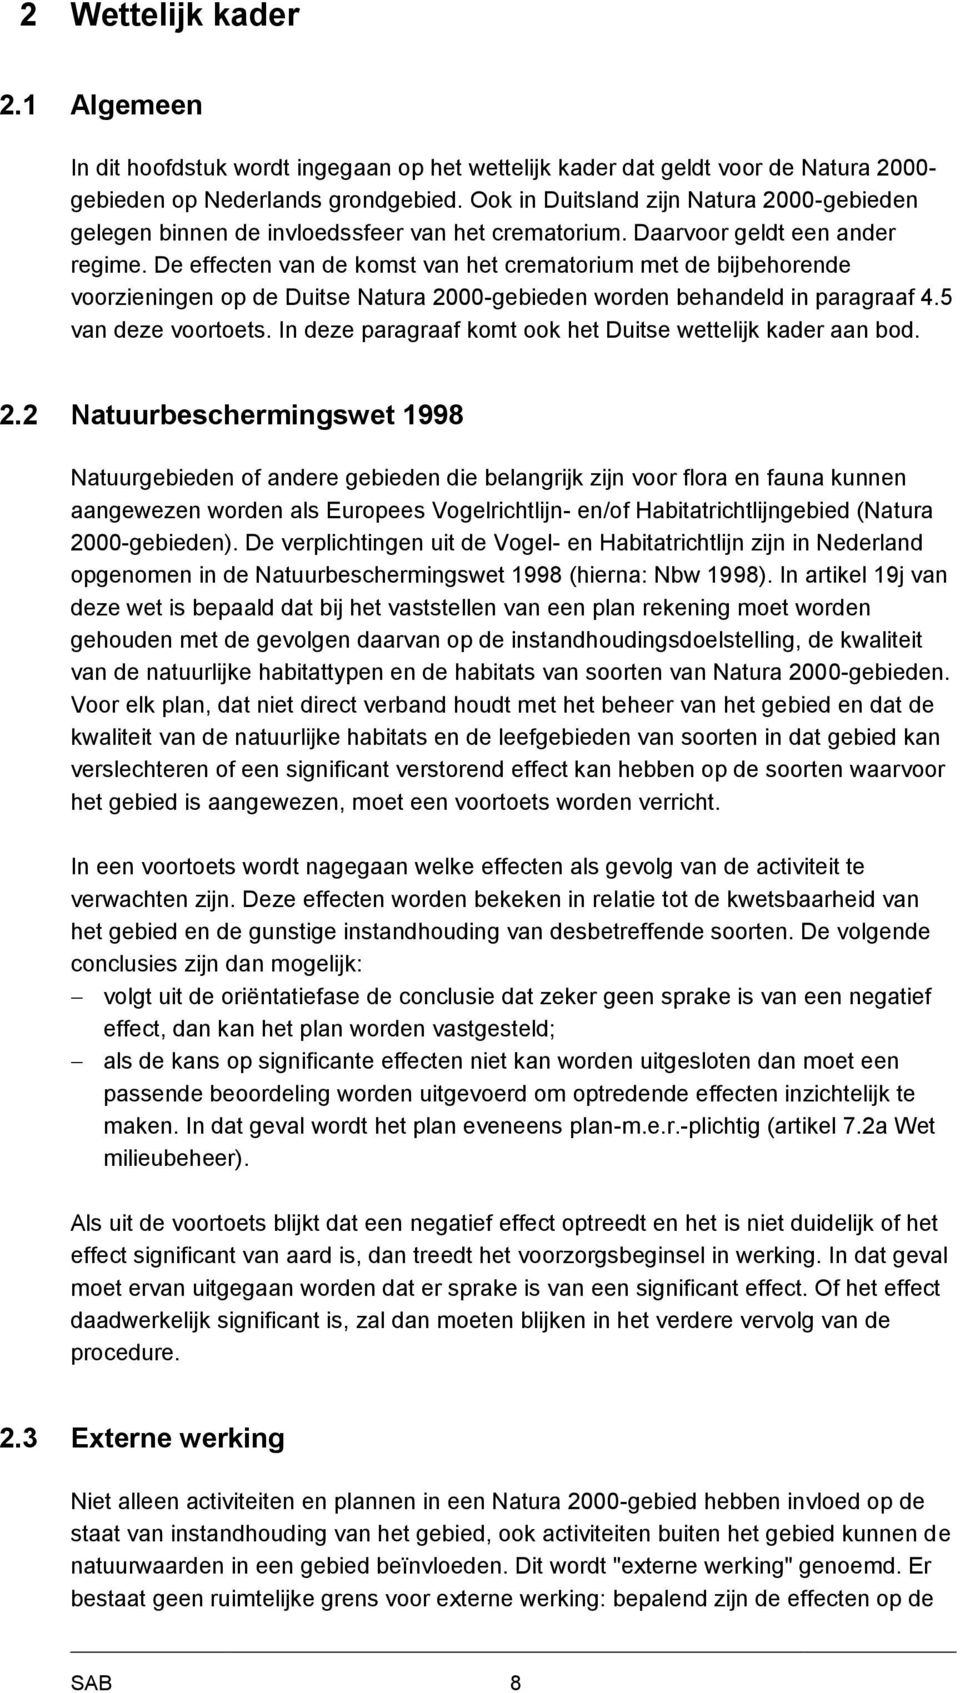 De effecten van de komst van het crematorium met de bijbehorende voorzieningen op de Duitse Natura 2000-gebieden worden behandeld in paragraaf 4.5 van deze voortoets.